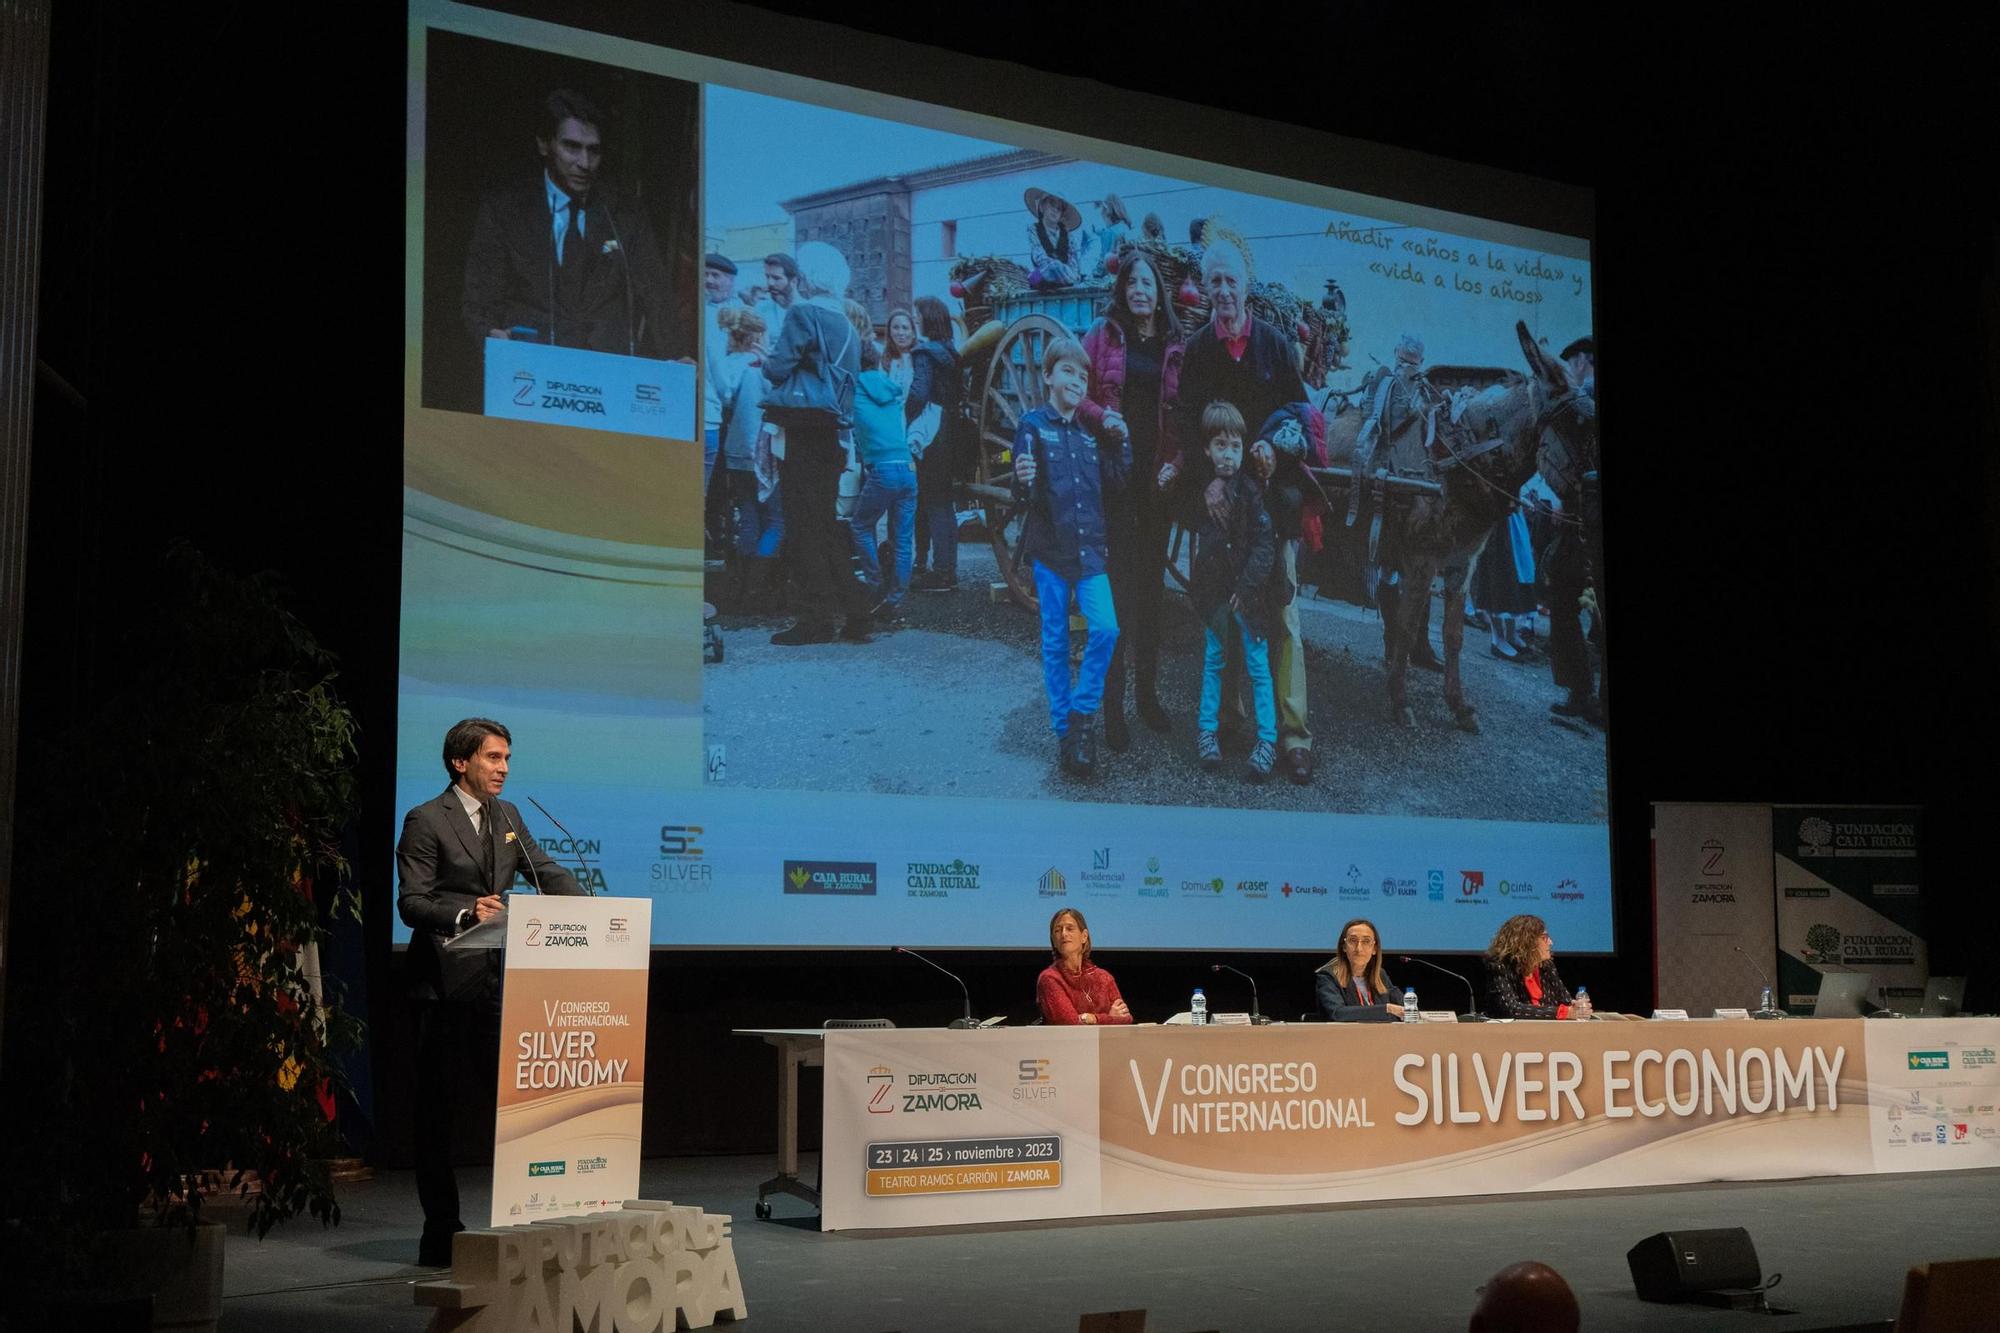 GALERÍA | Así ha sido el segundo día del congreso Silver Economy de Zamora